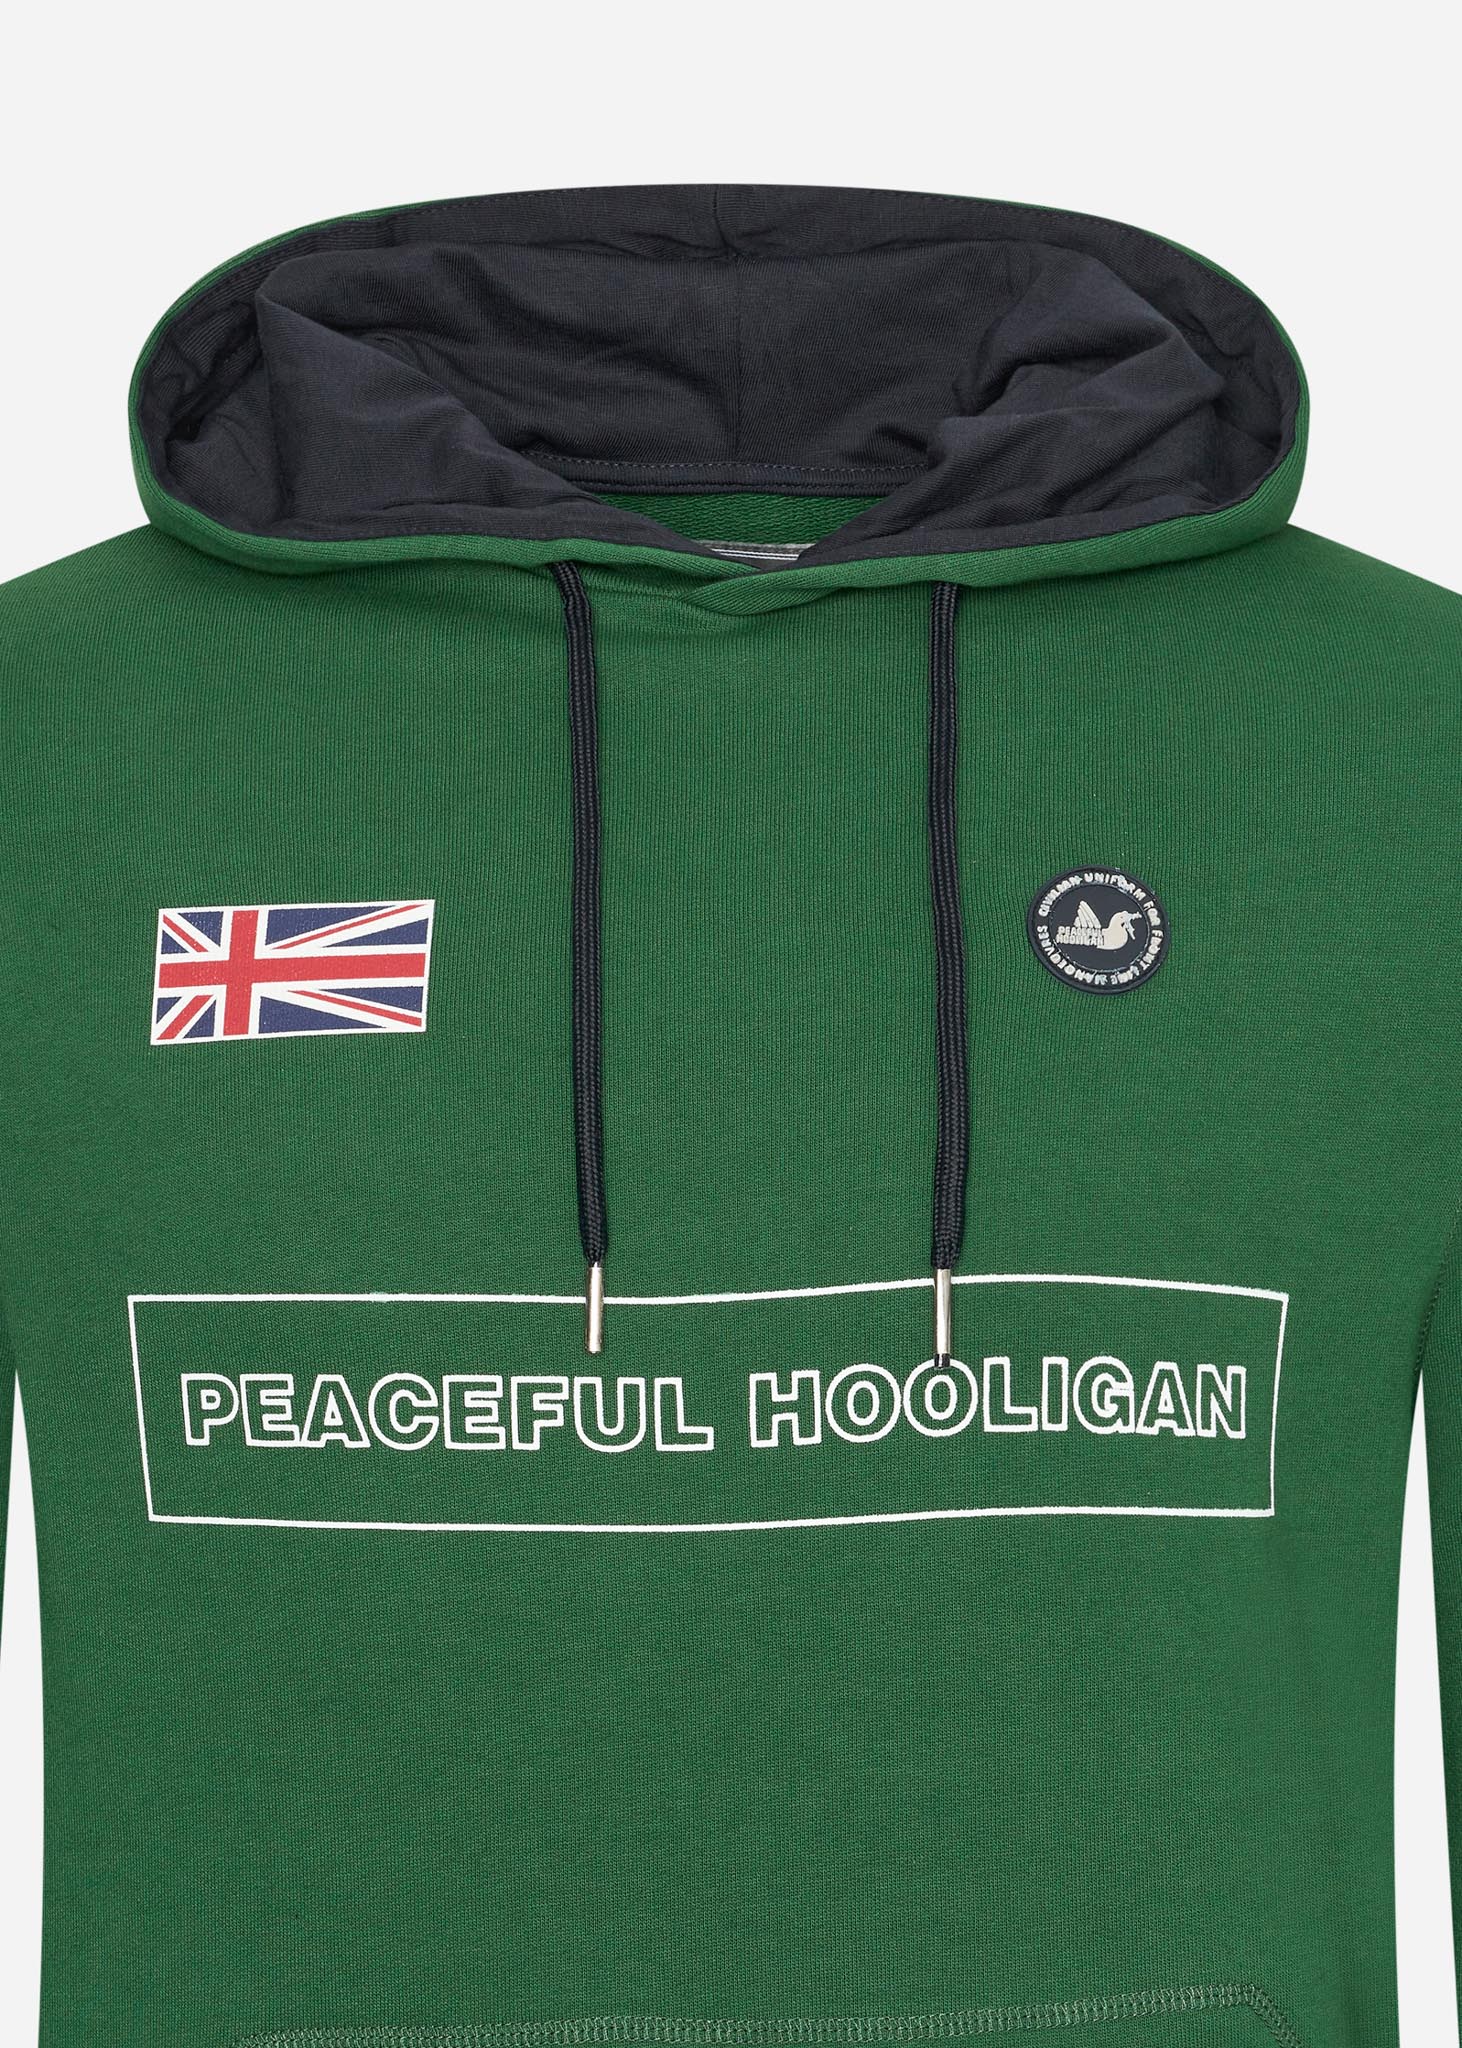 Peaceful Hooligan Hoodies  Flag hoodie - race green 